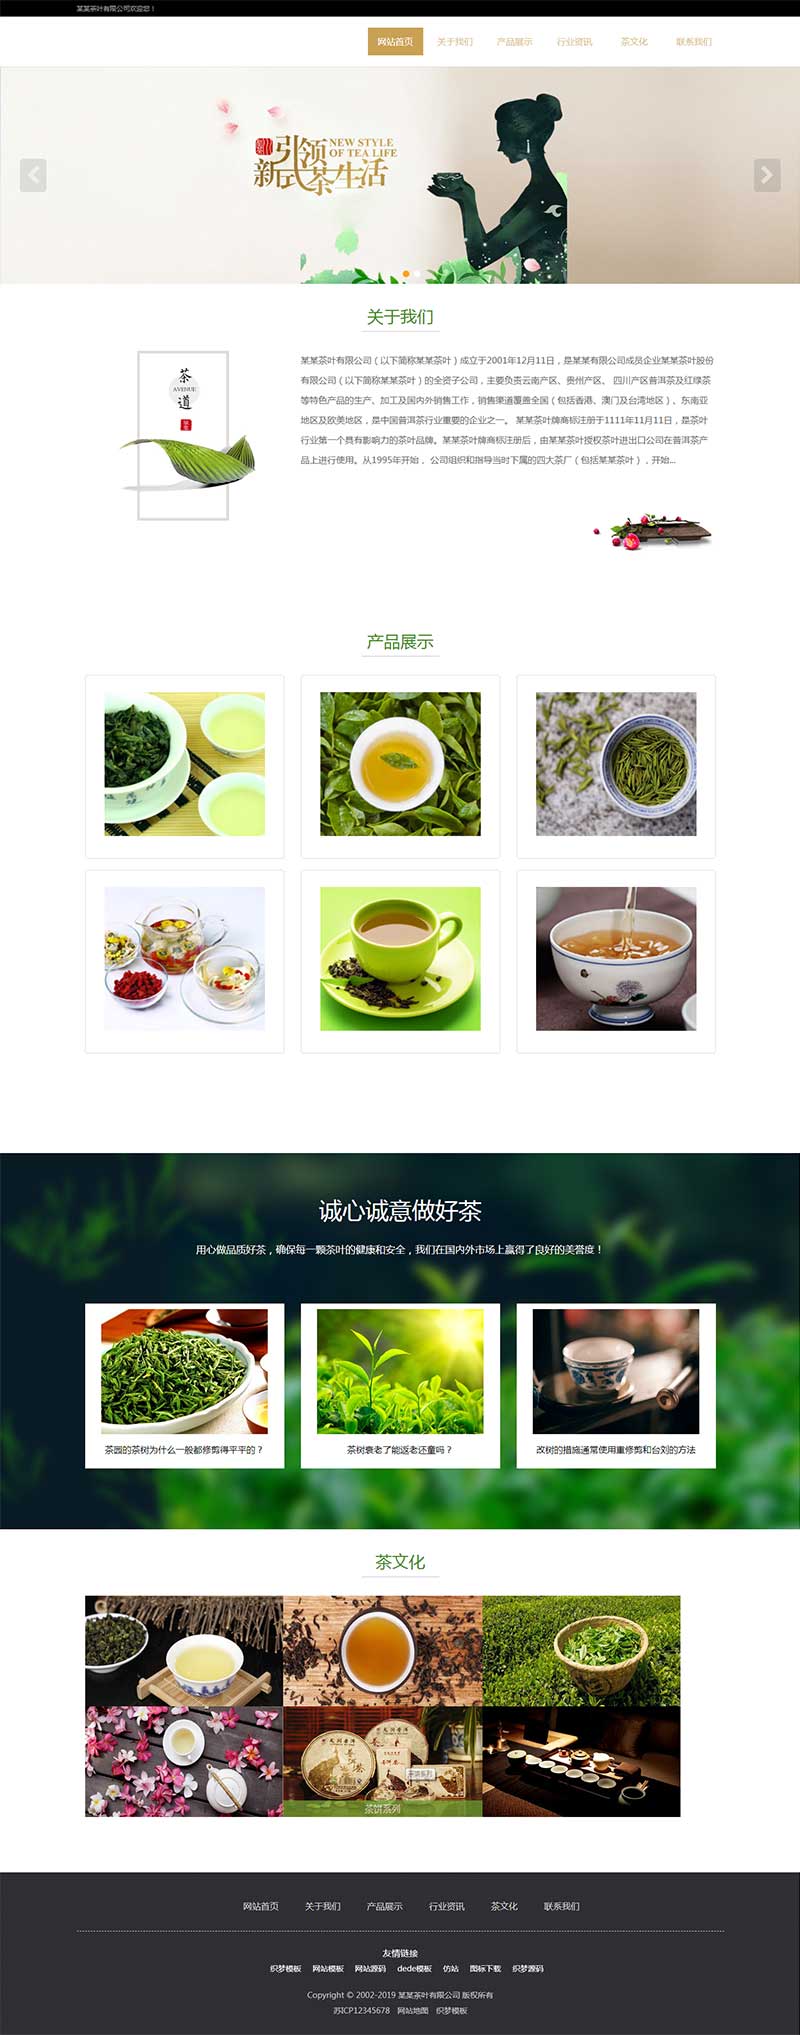 响应式茶叶类网站织梦模板 HTML5茶叶茶艺茶文化养生茶网站源码